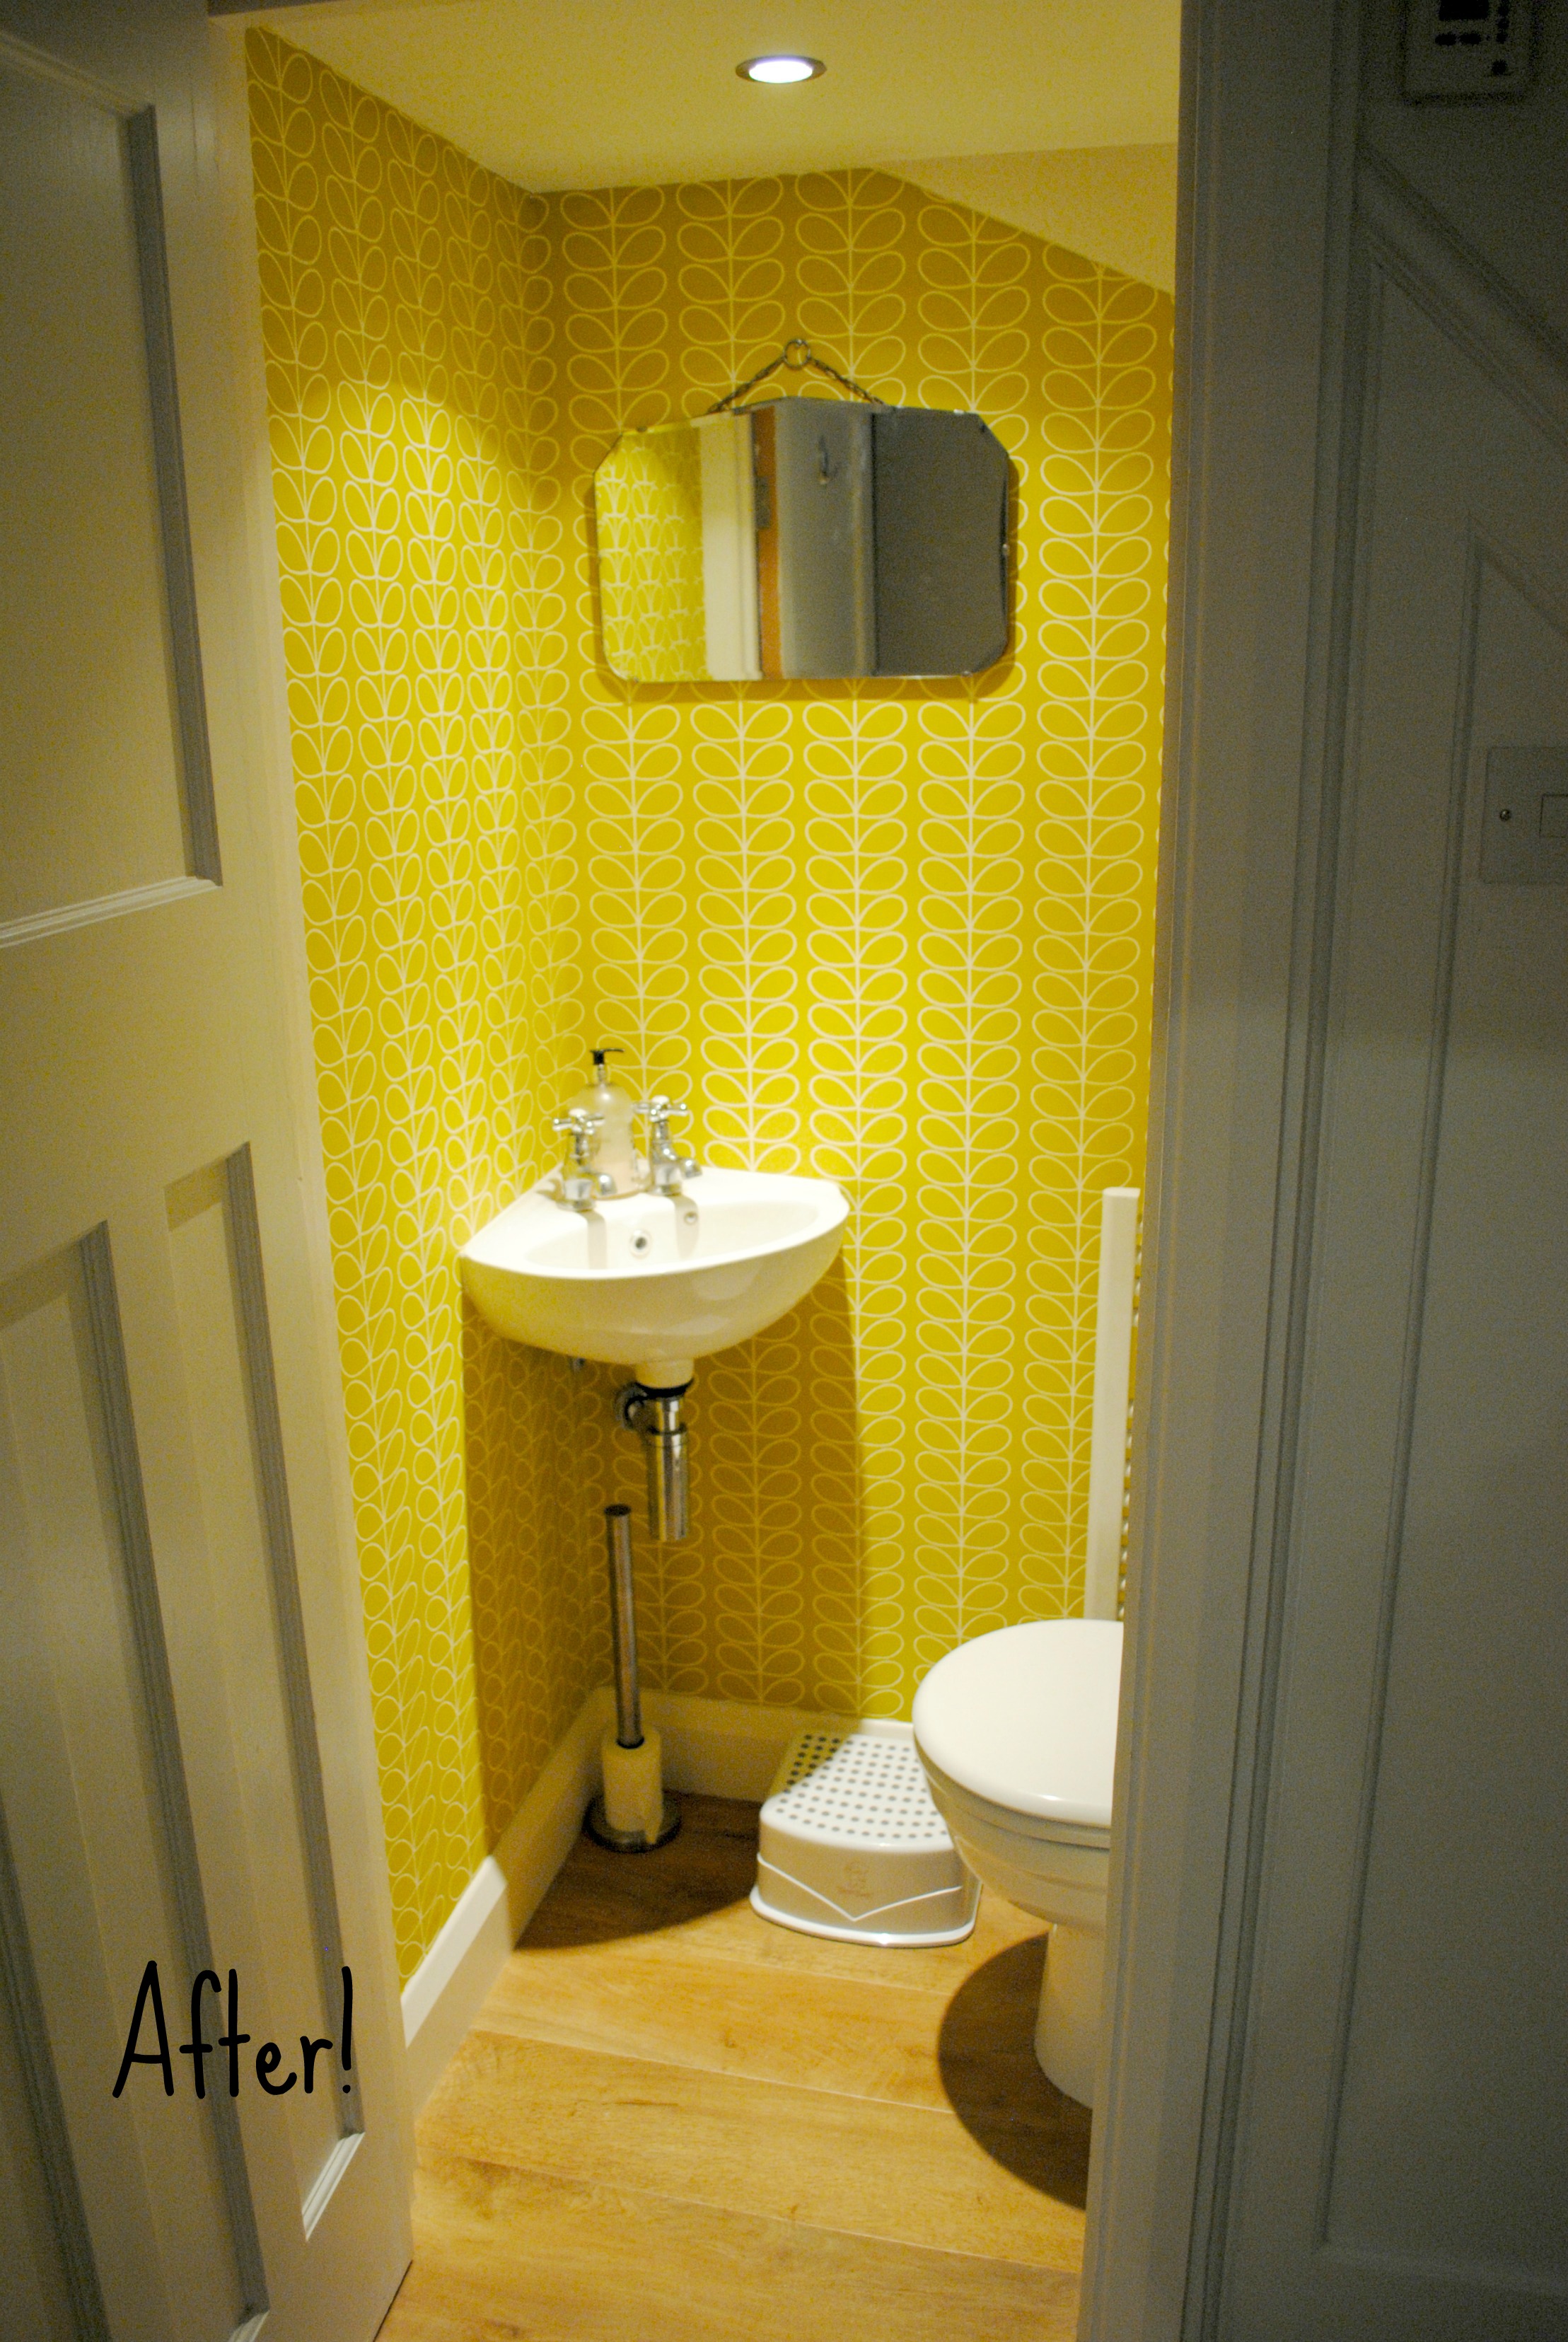 downstairs toilet wallpaper,bathroom,room,property,yellow,floor